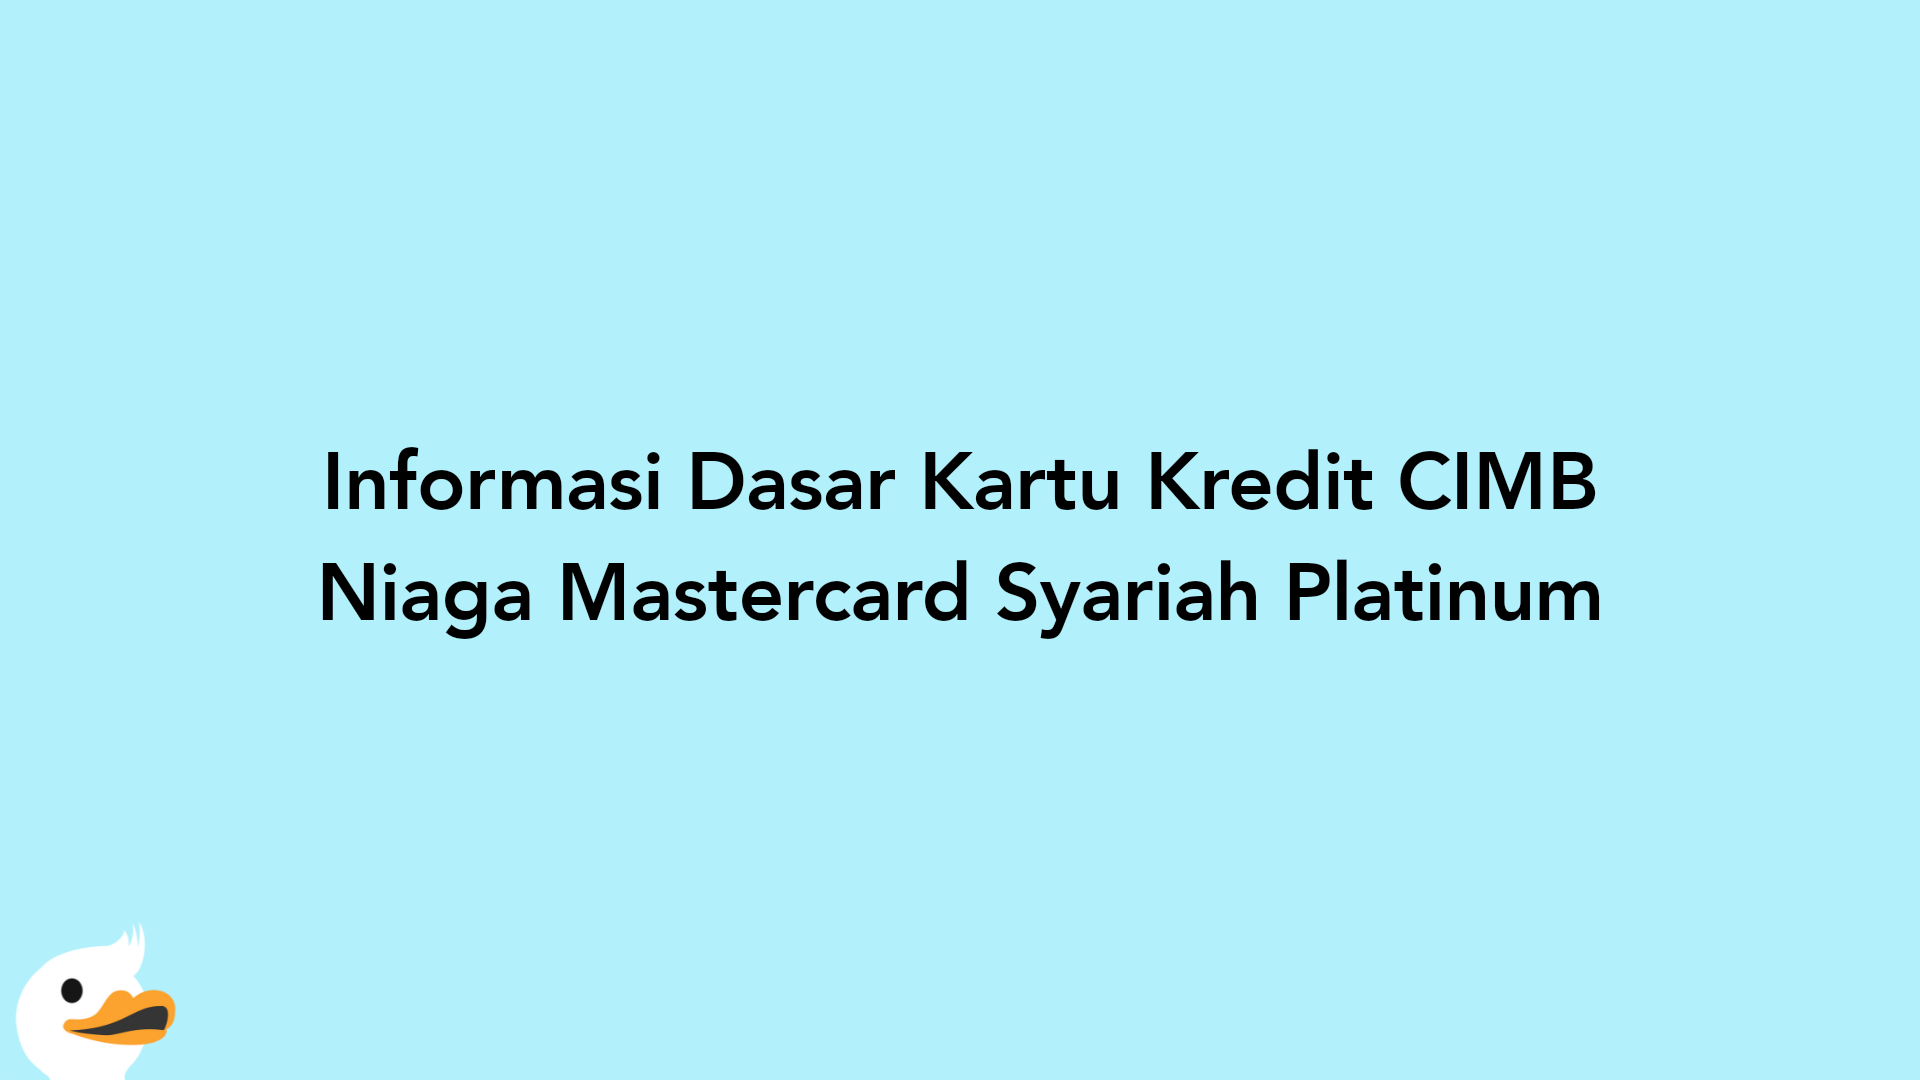 Informasi Dasar Kartu Kredit CIMB Niaga Mastercard Syariah Platinum